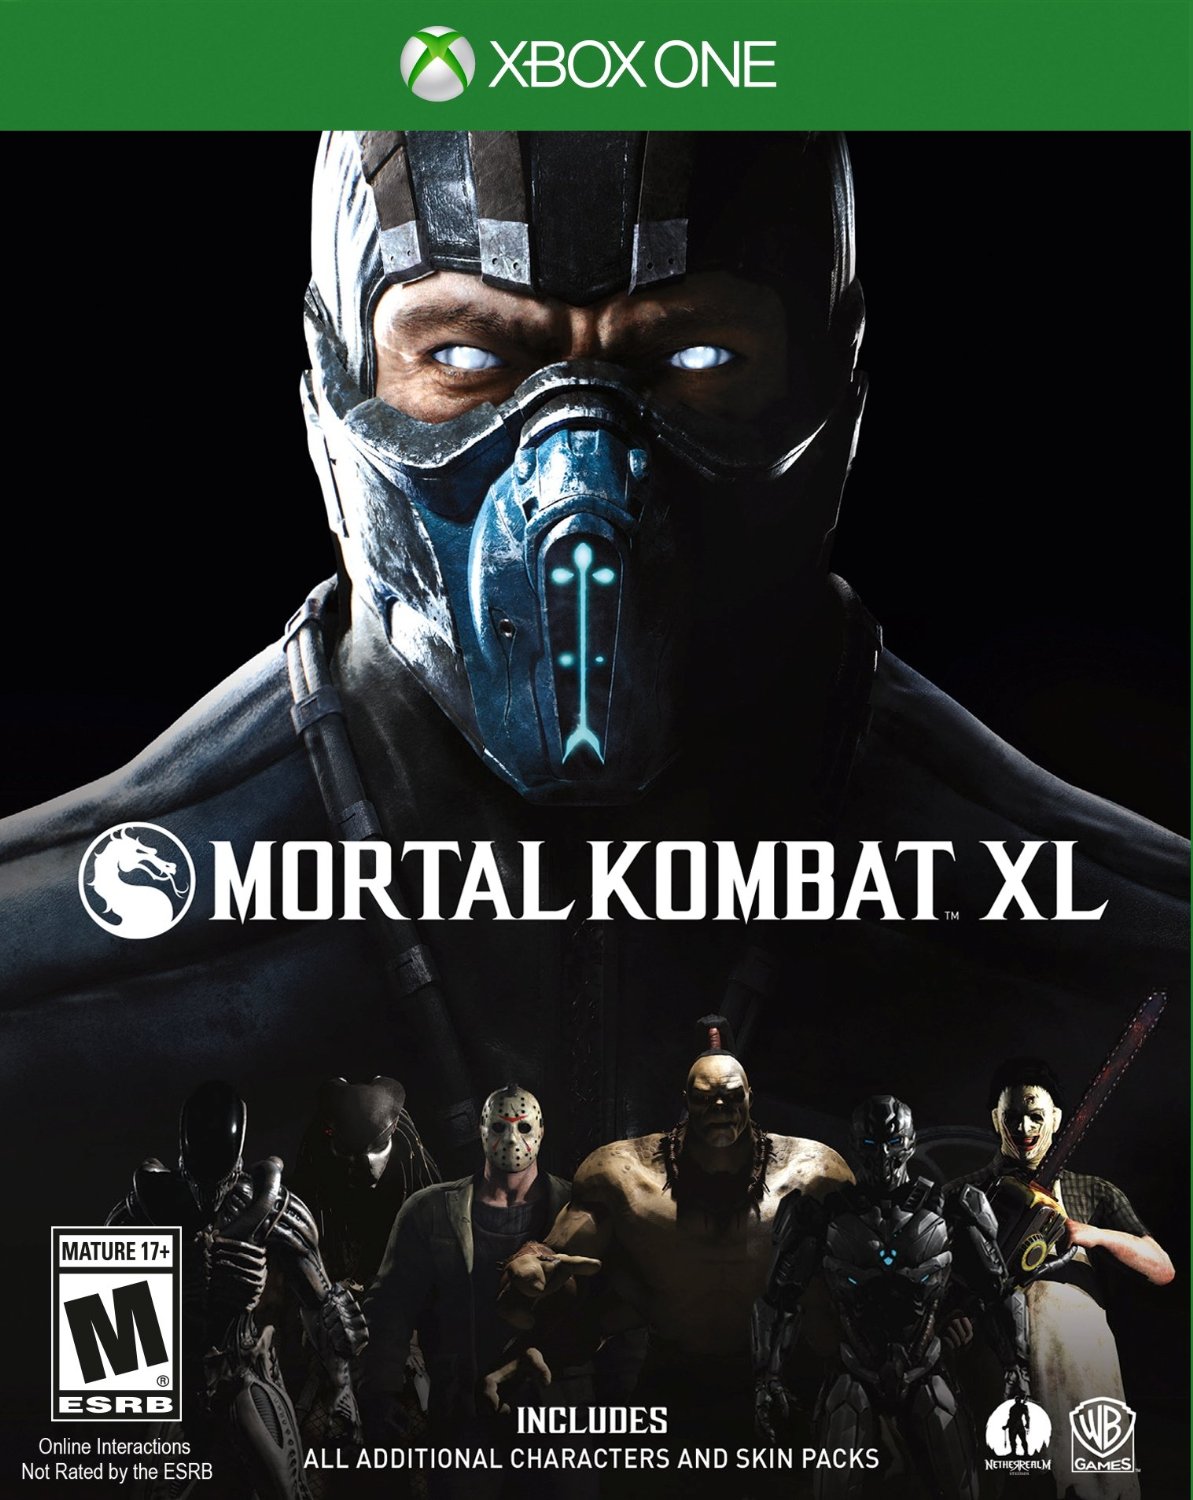 jaquette reduite de Mortal Kombat XL sur Xbox One